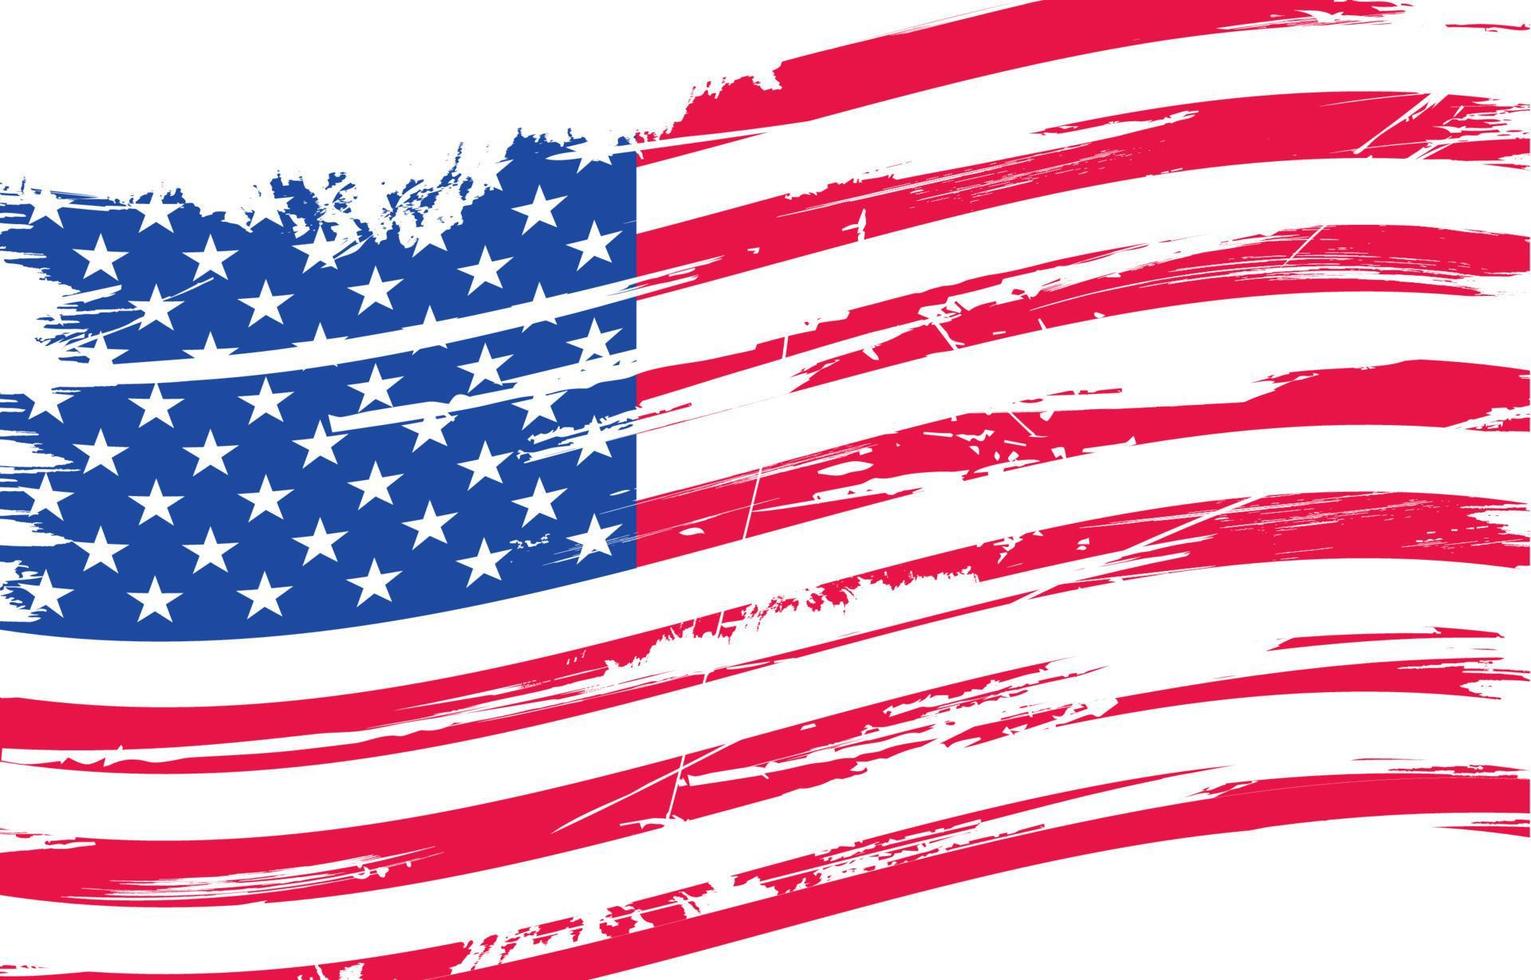 gewellte amerikanische Flagge mit Grunge-Texturen vektor